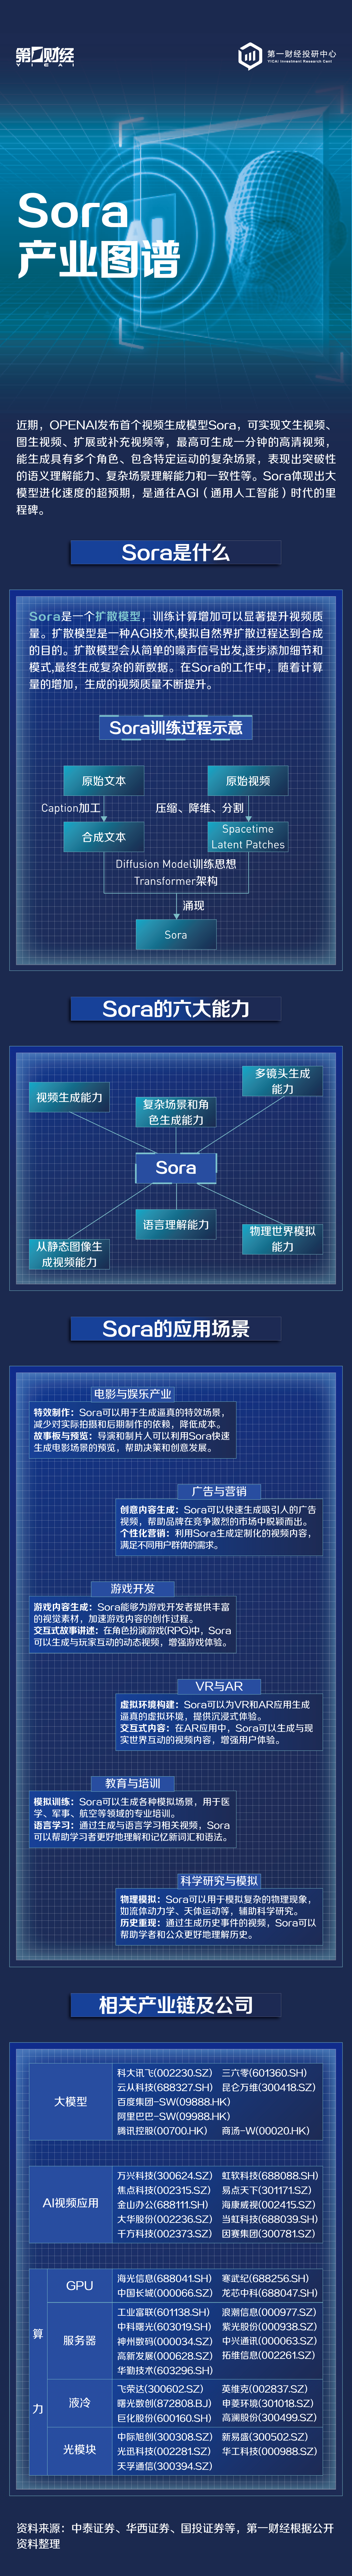 Sora: o primeiro modelo de IA de texto para vídeo - SempreUpdate